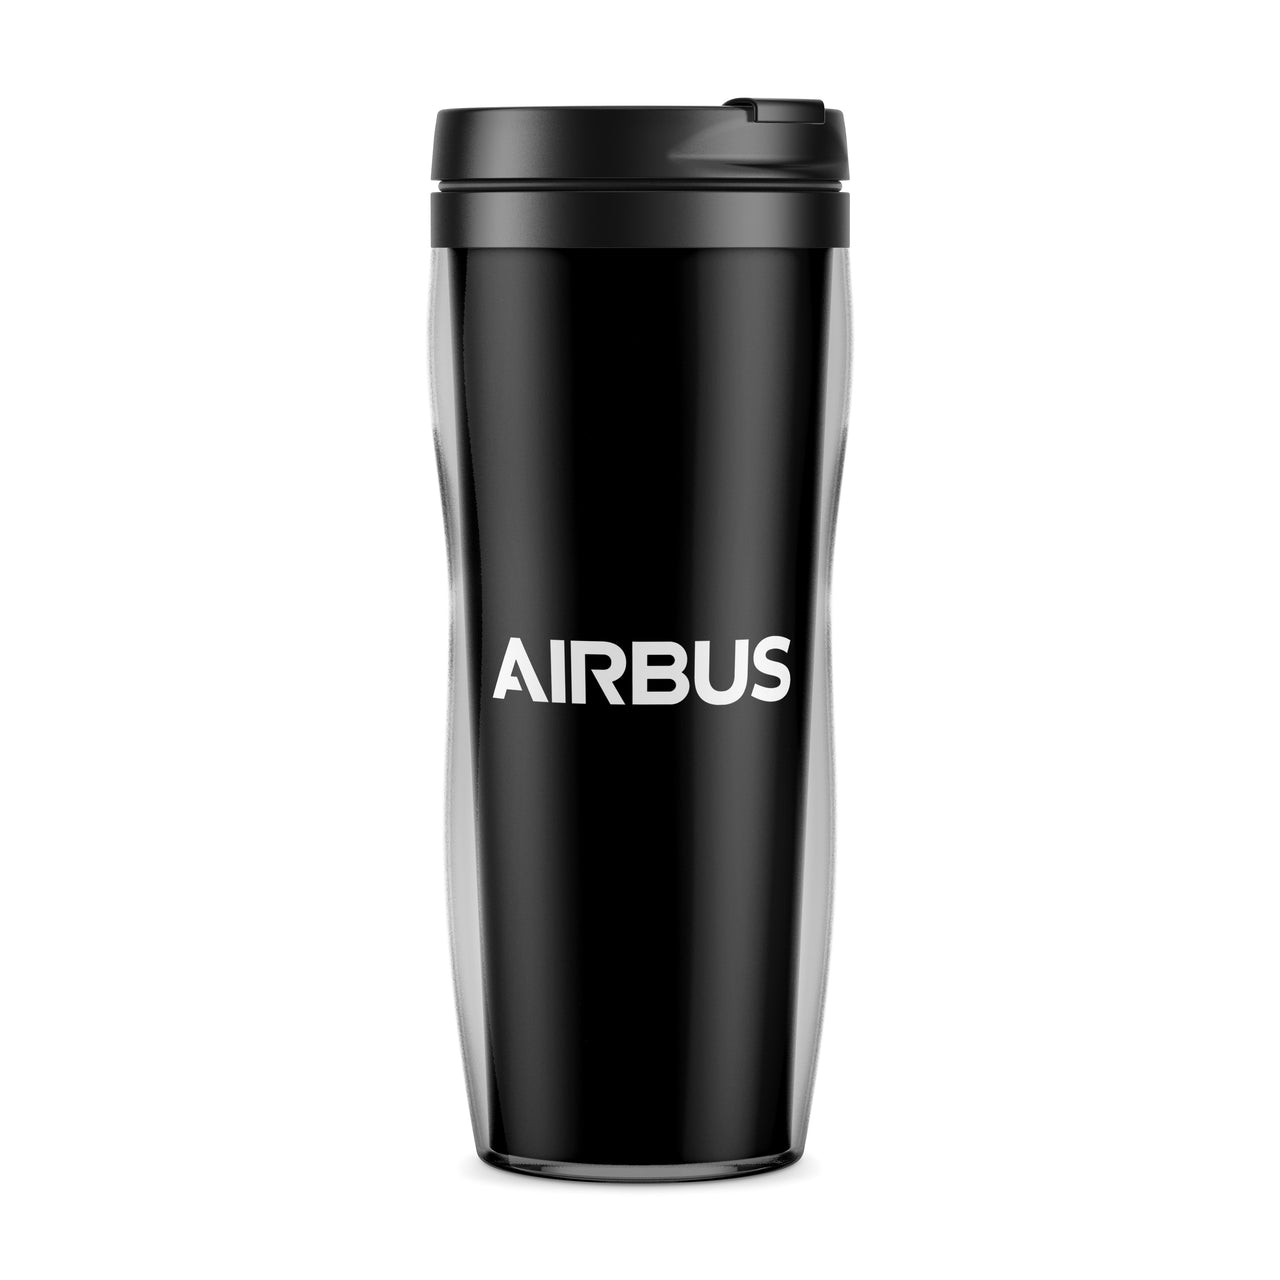 Airbus & Text Designed Travel Mugs